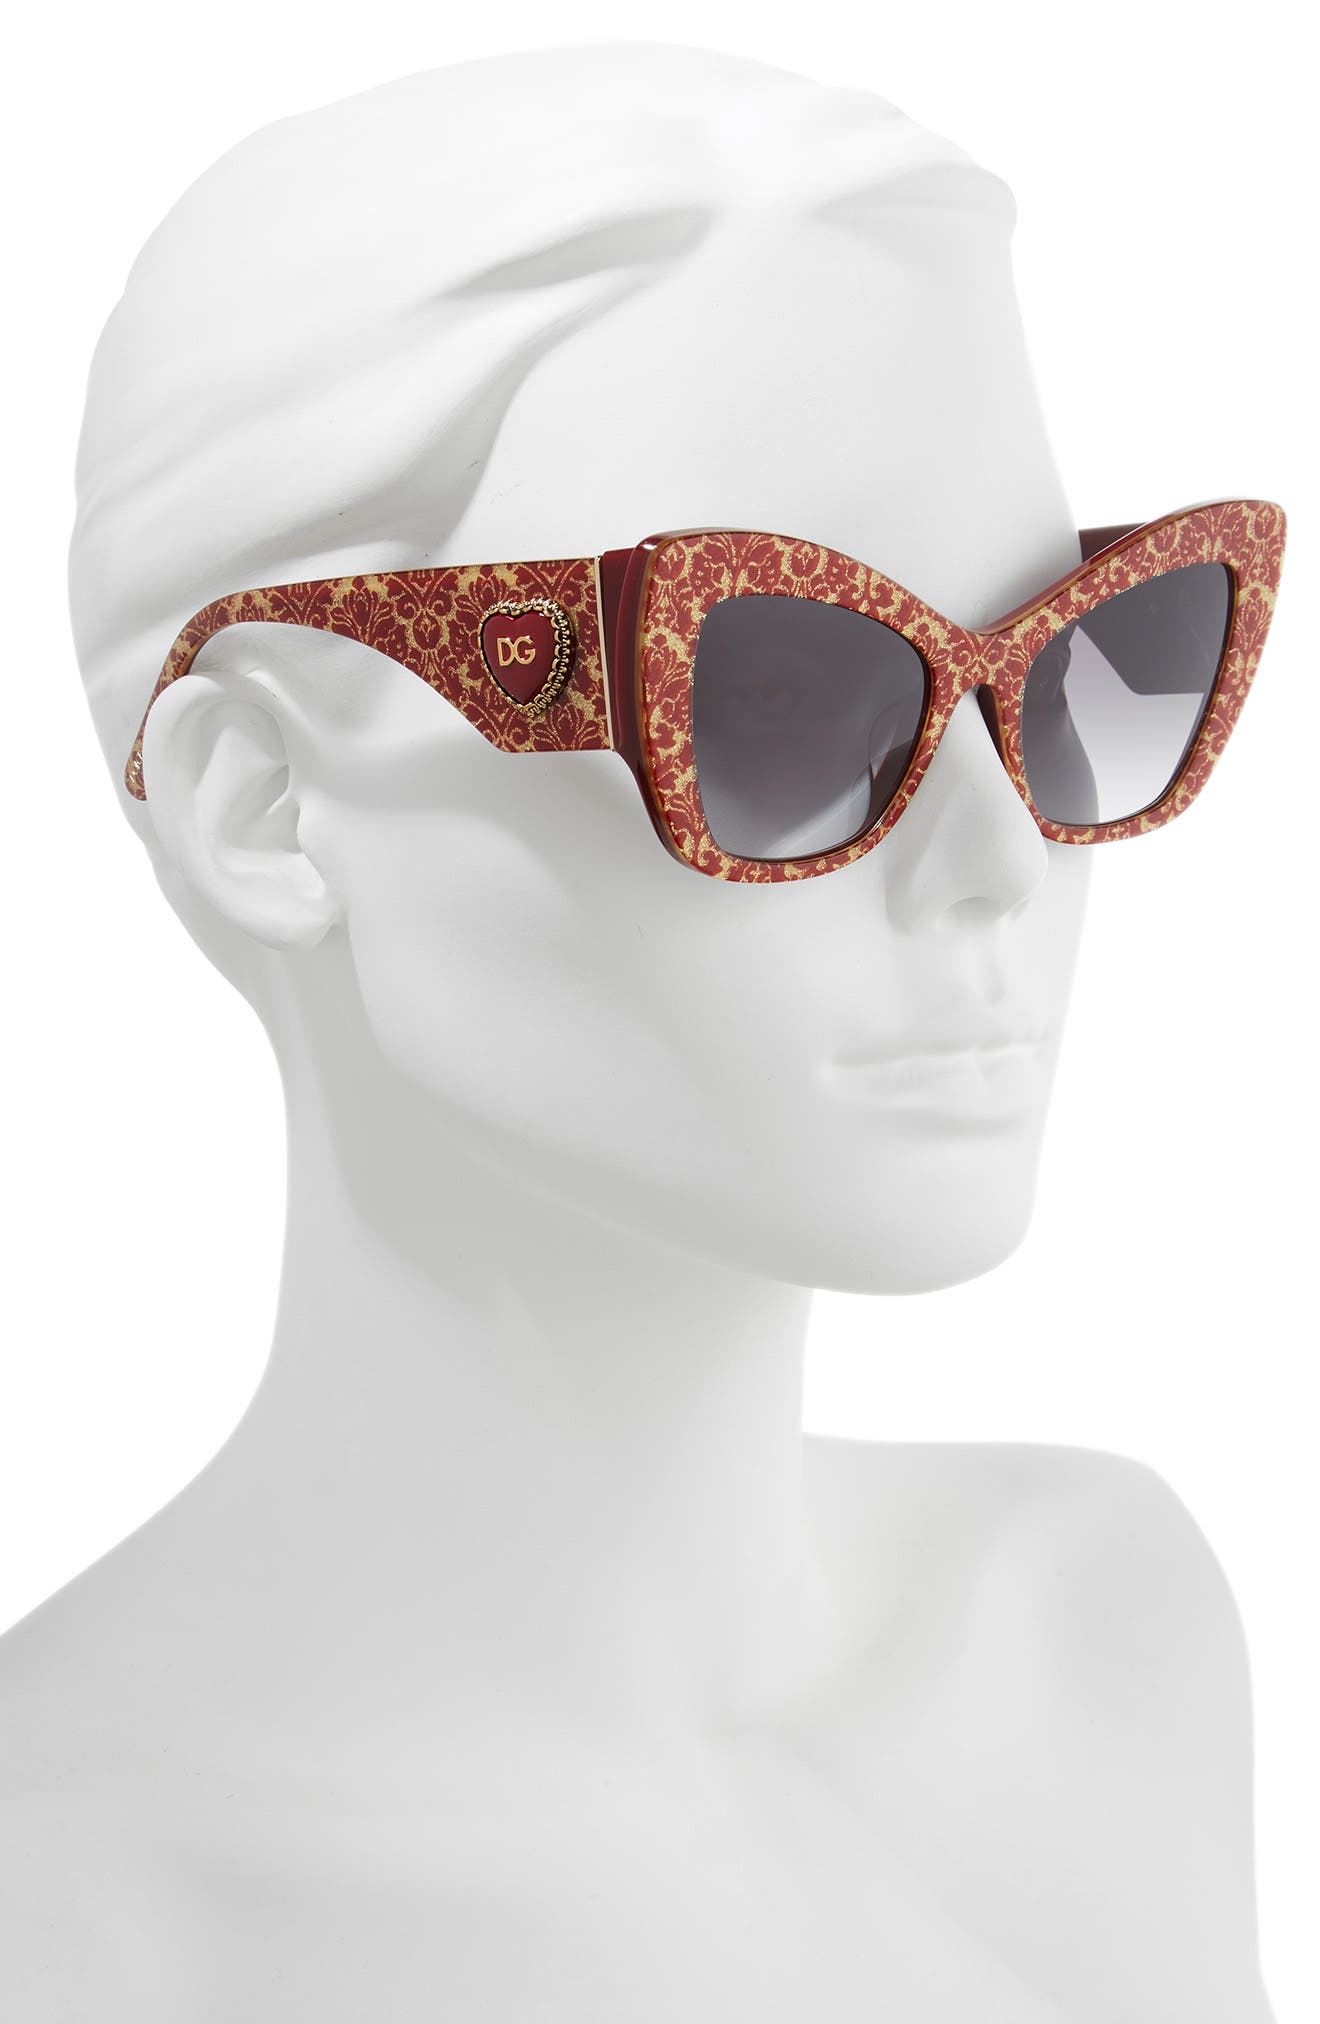 dolce and gabbana heart sunglasses